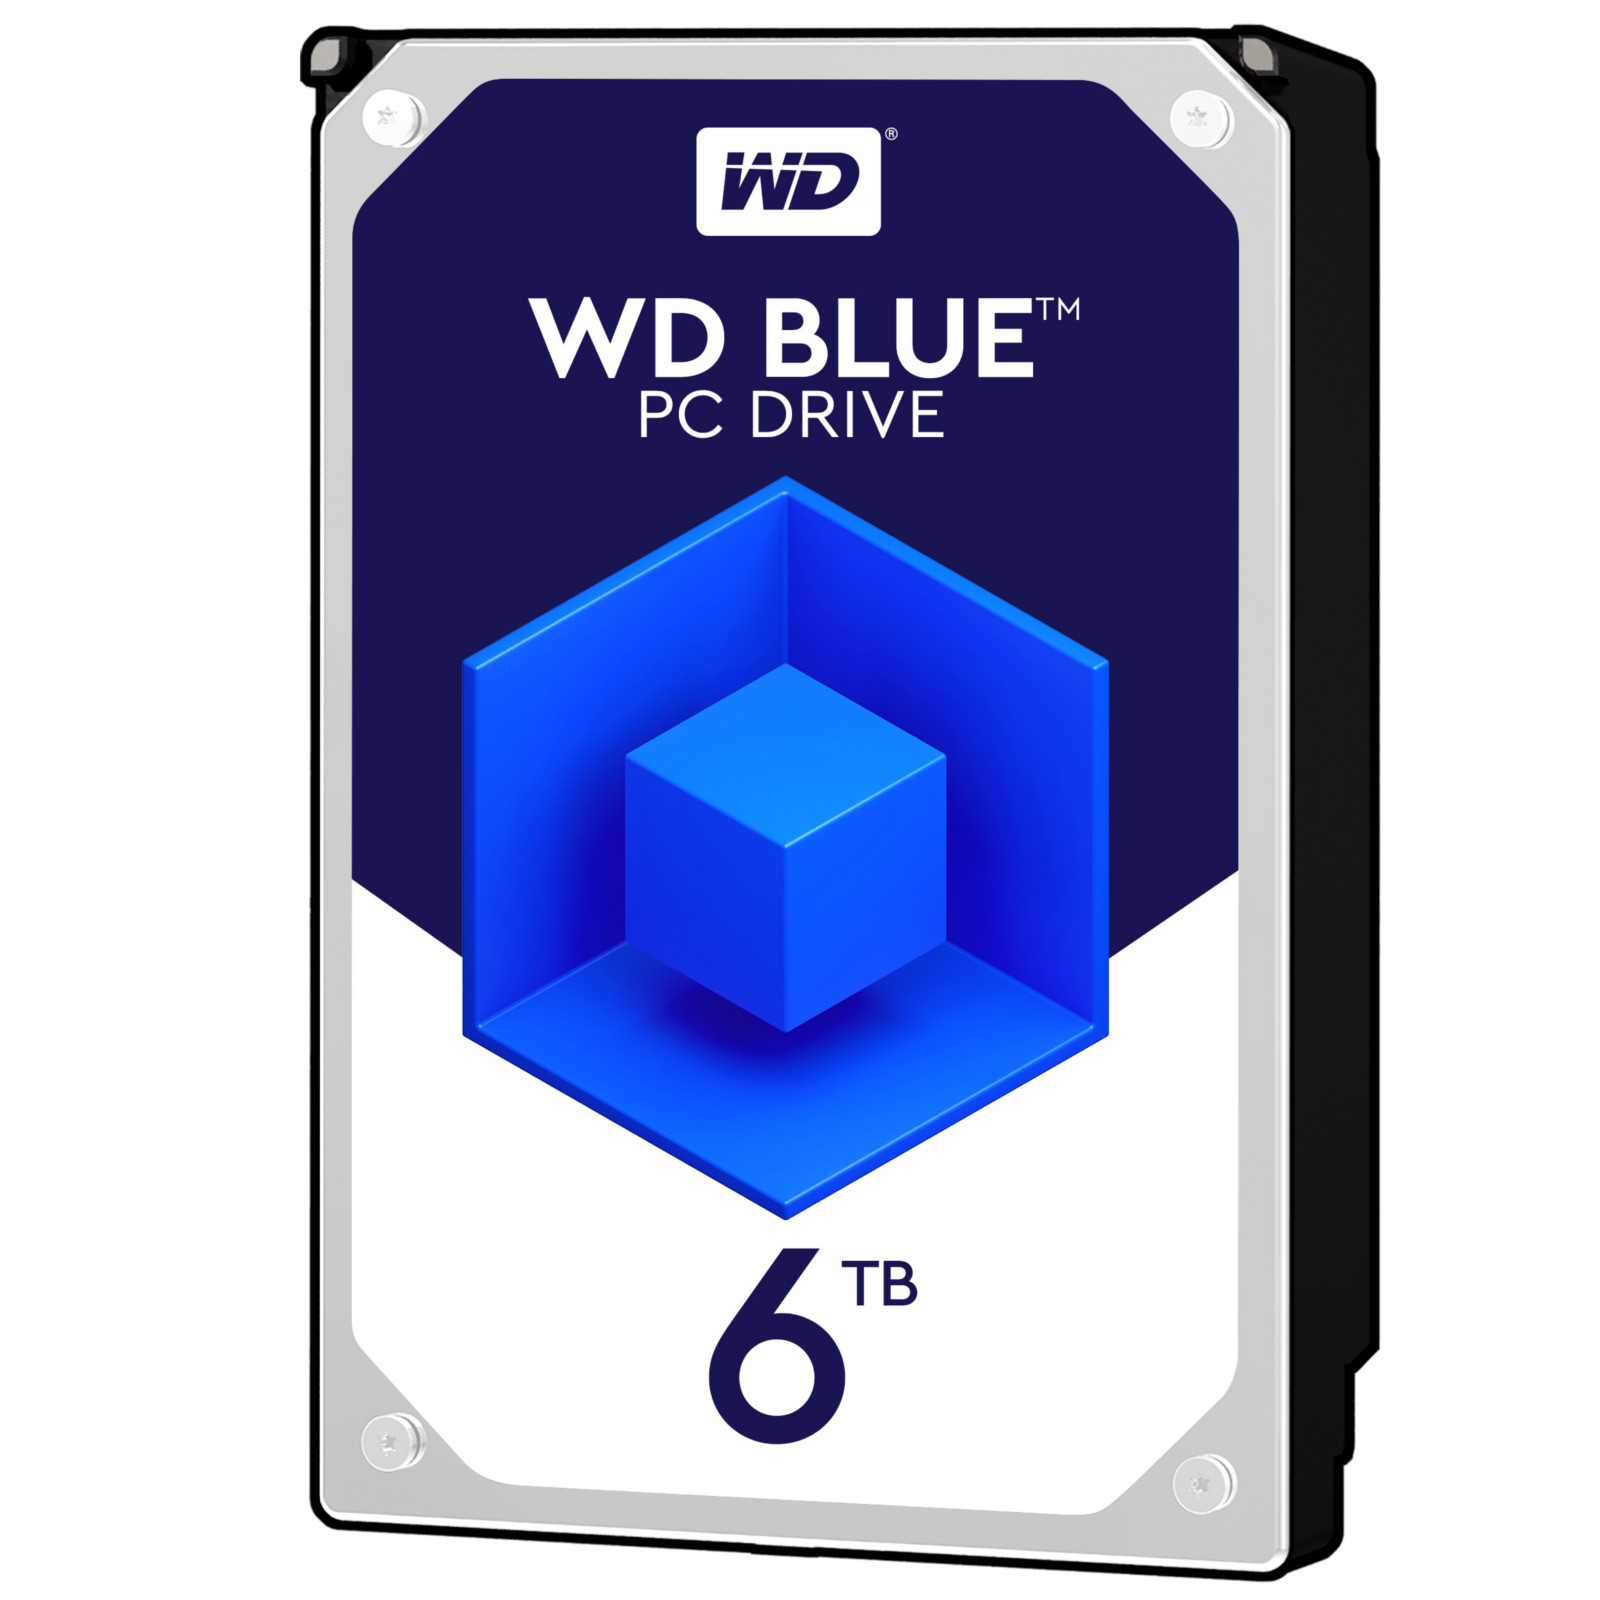 WD - WD 6TB Blue HDD 5400rpm 256MB Cache Internal Hard Drive (WD60EZAZ)